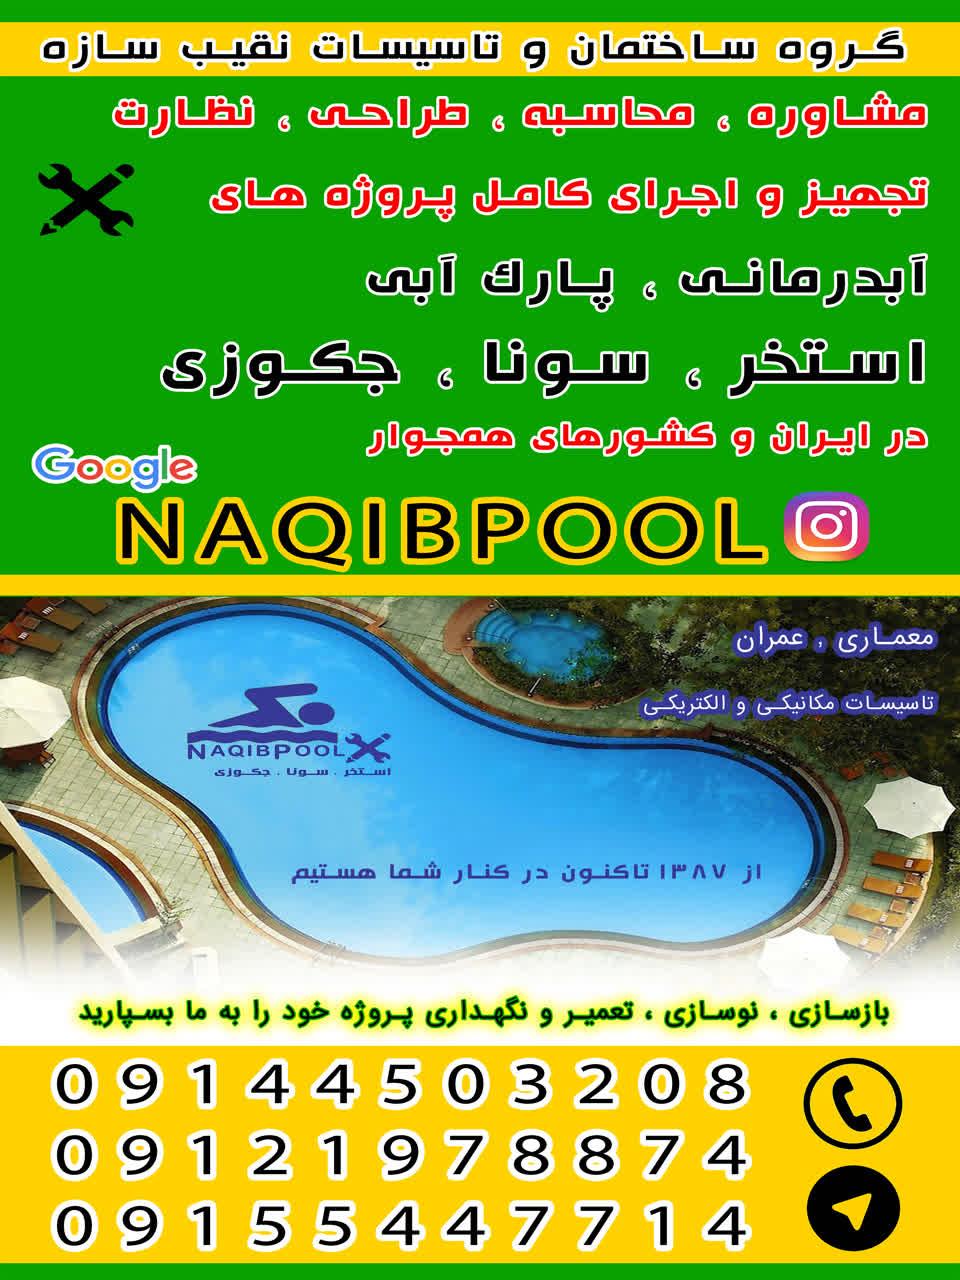 NAQIBPOOL-GROUP